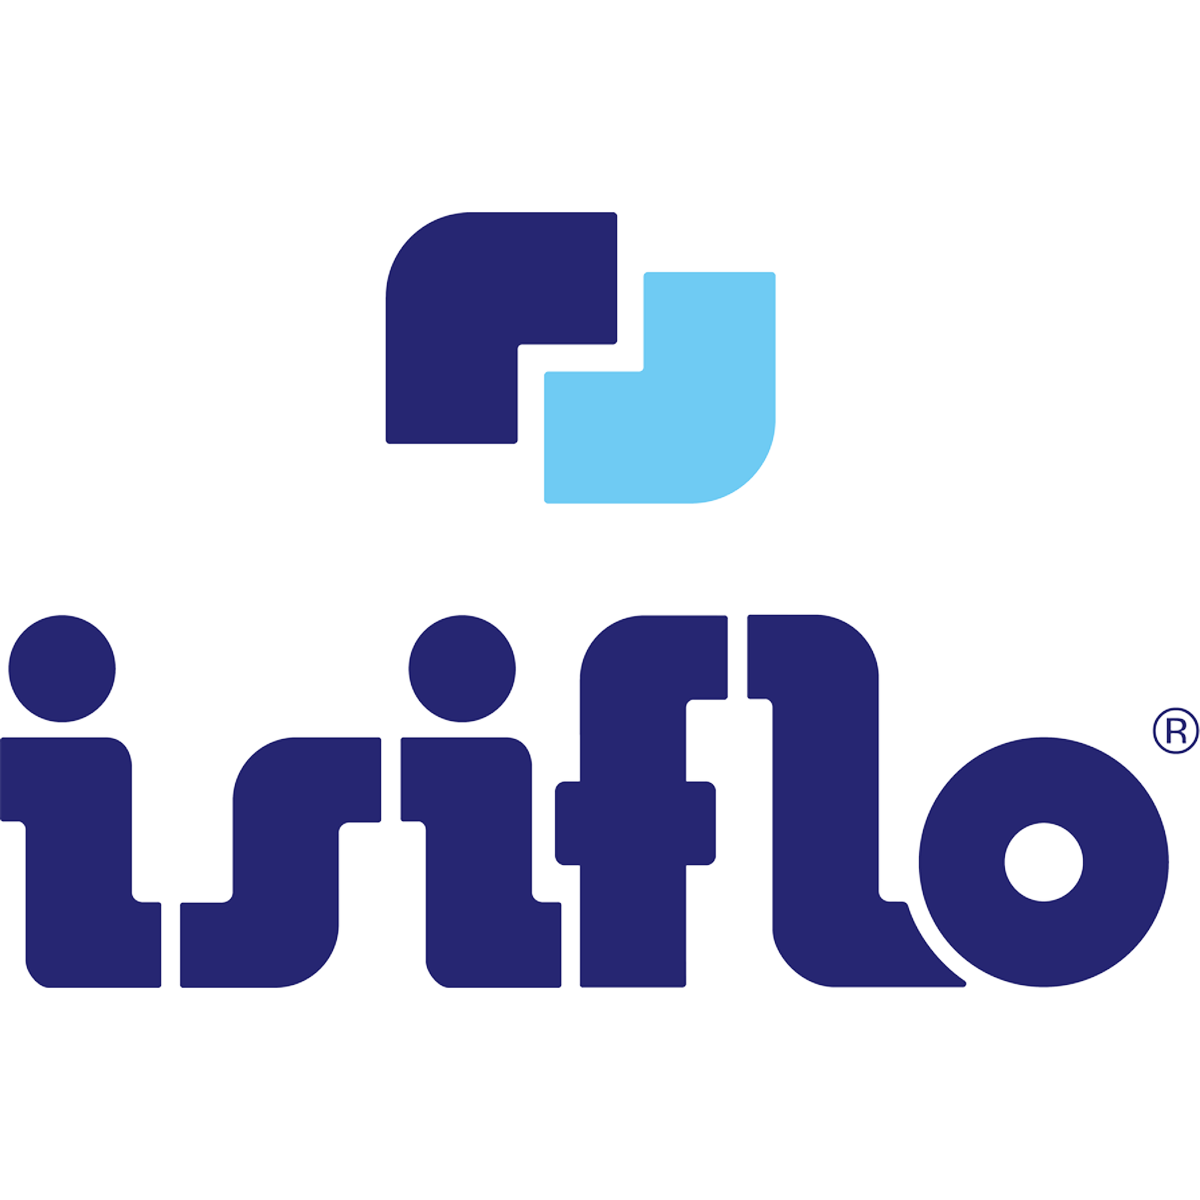 ISIFLO Logo